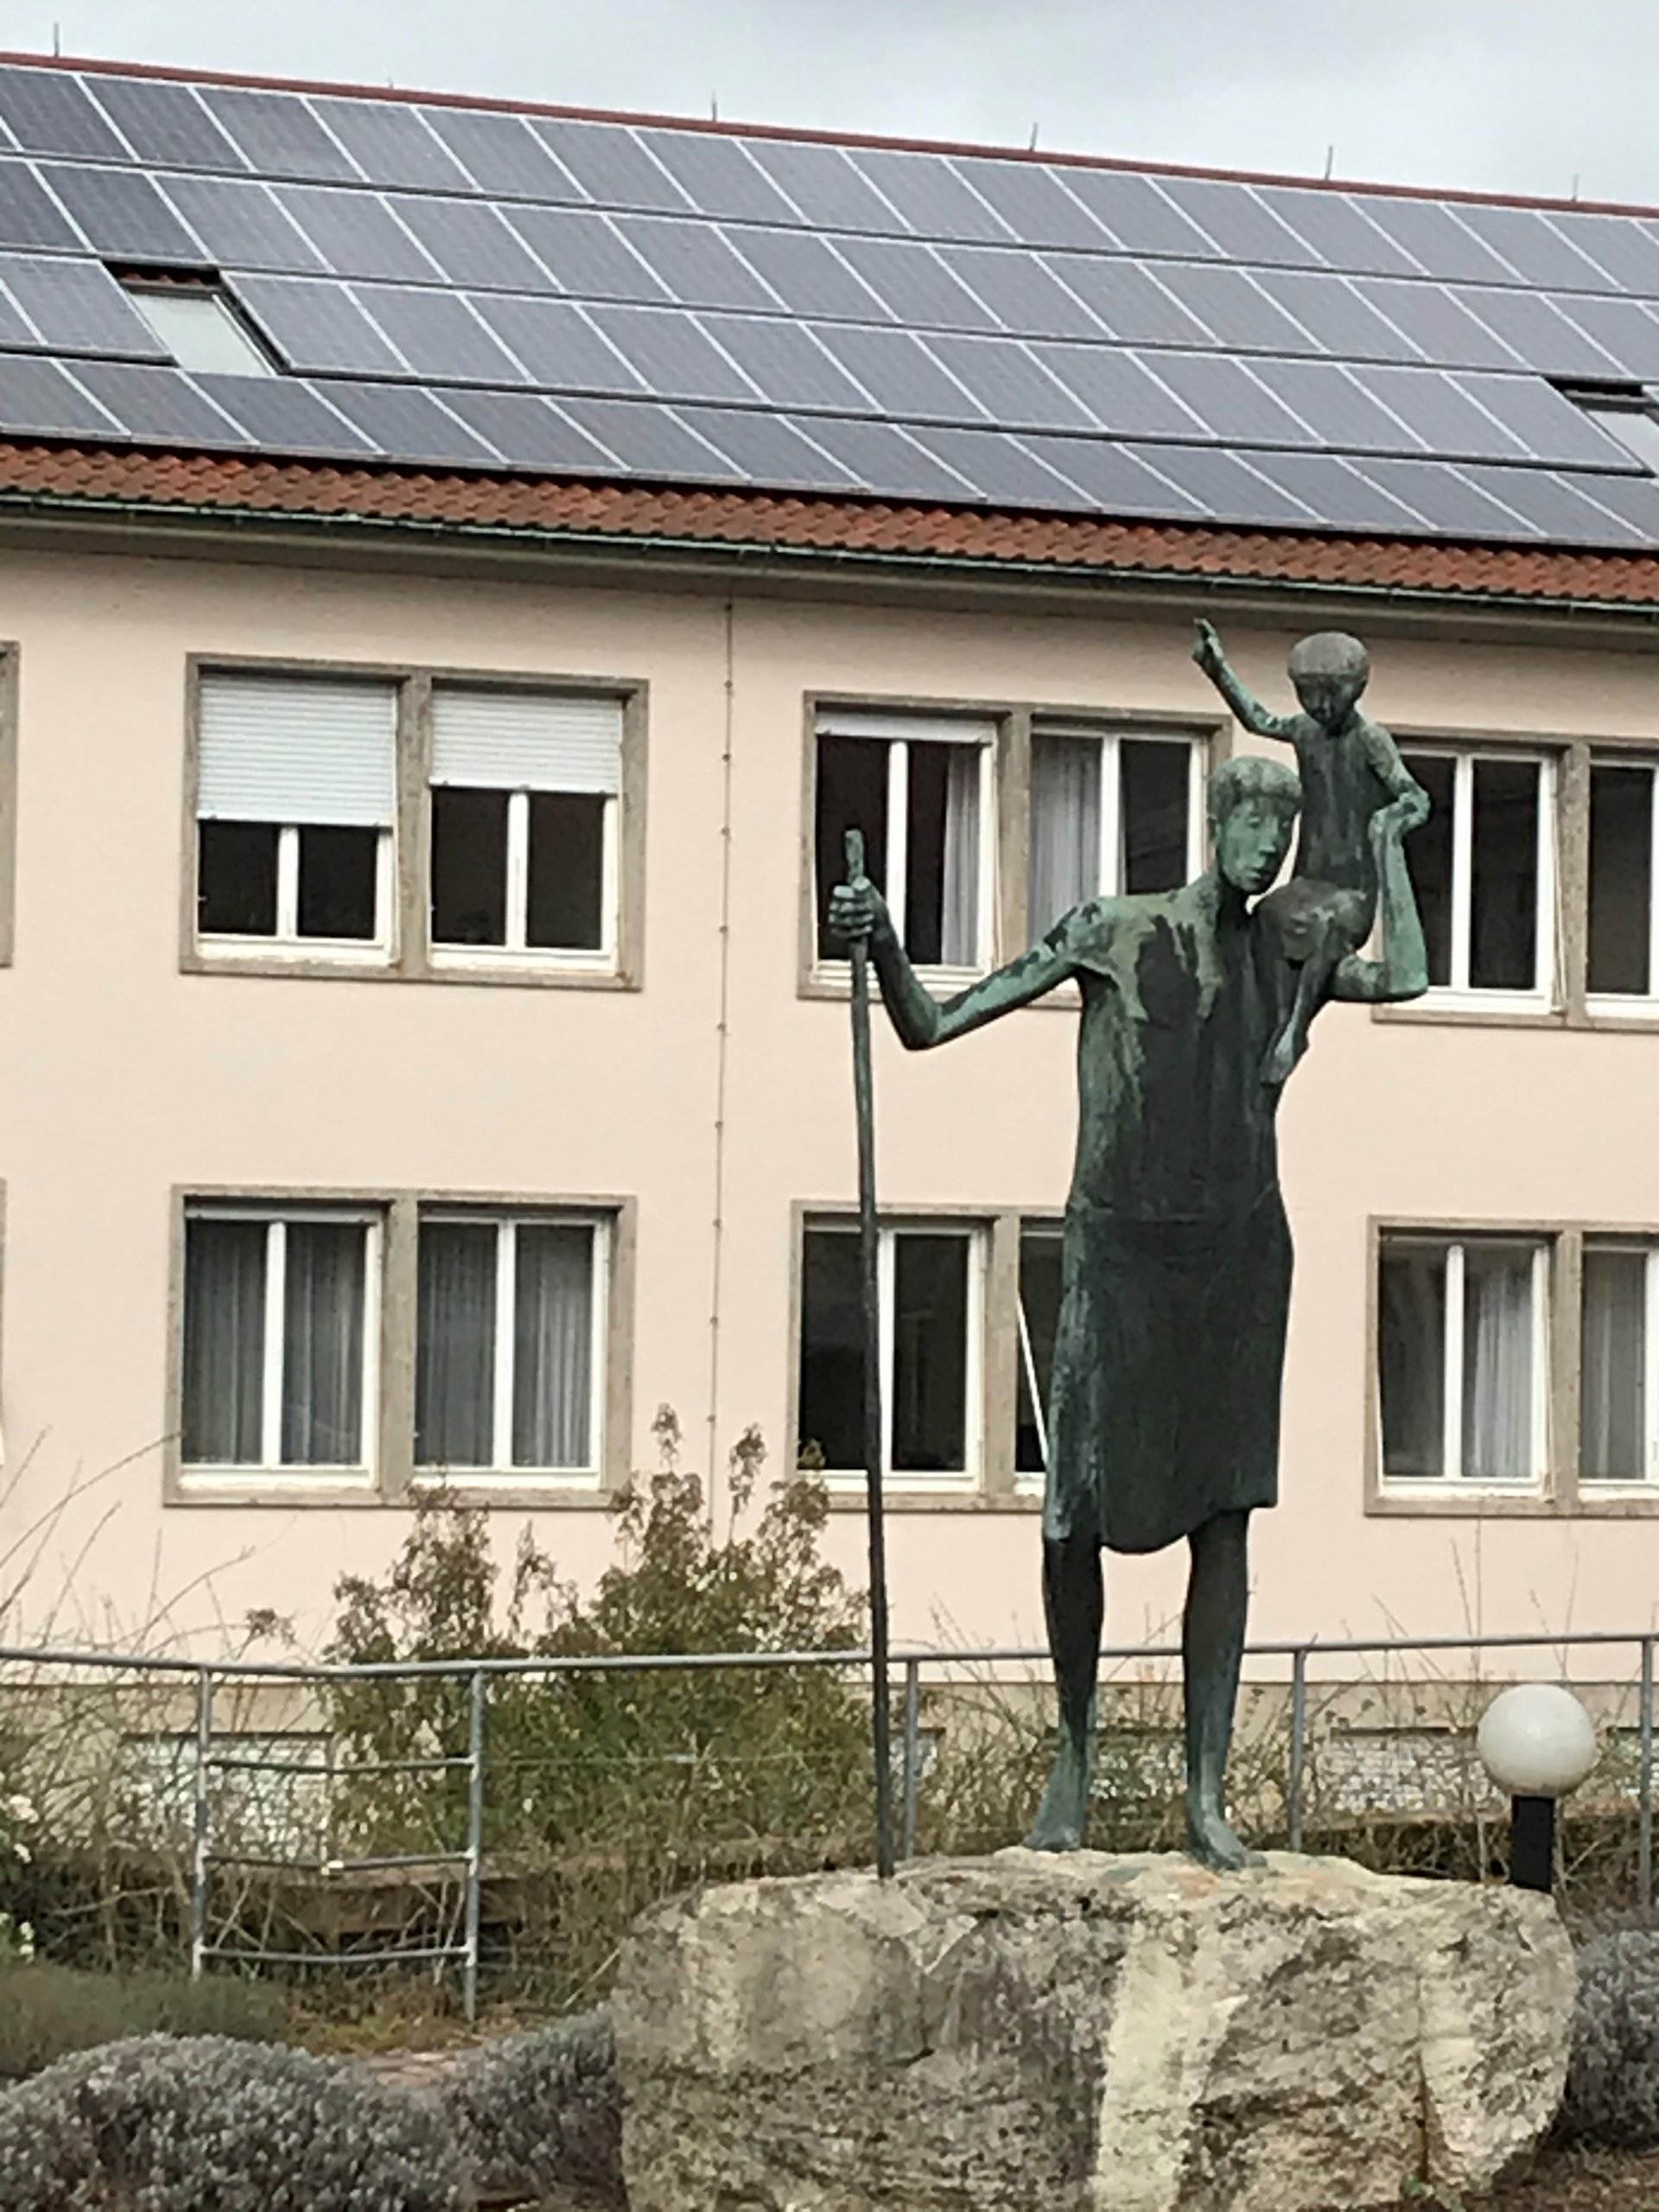 Christophorus-Skulptur vor einem kirchlichen Gebäude mit Photovoltaik auf dem Dach